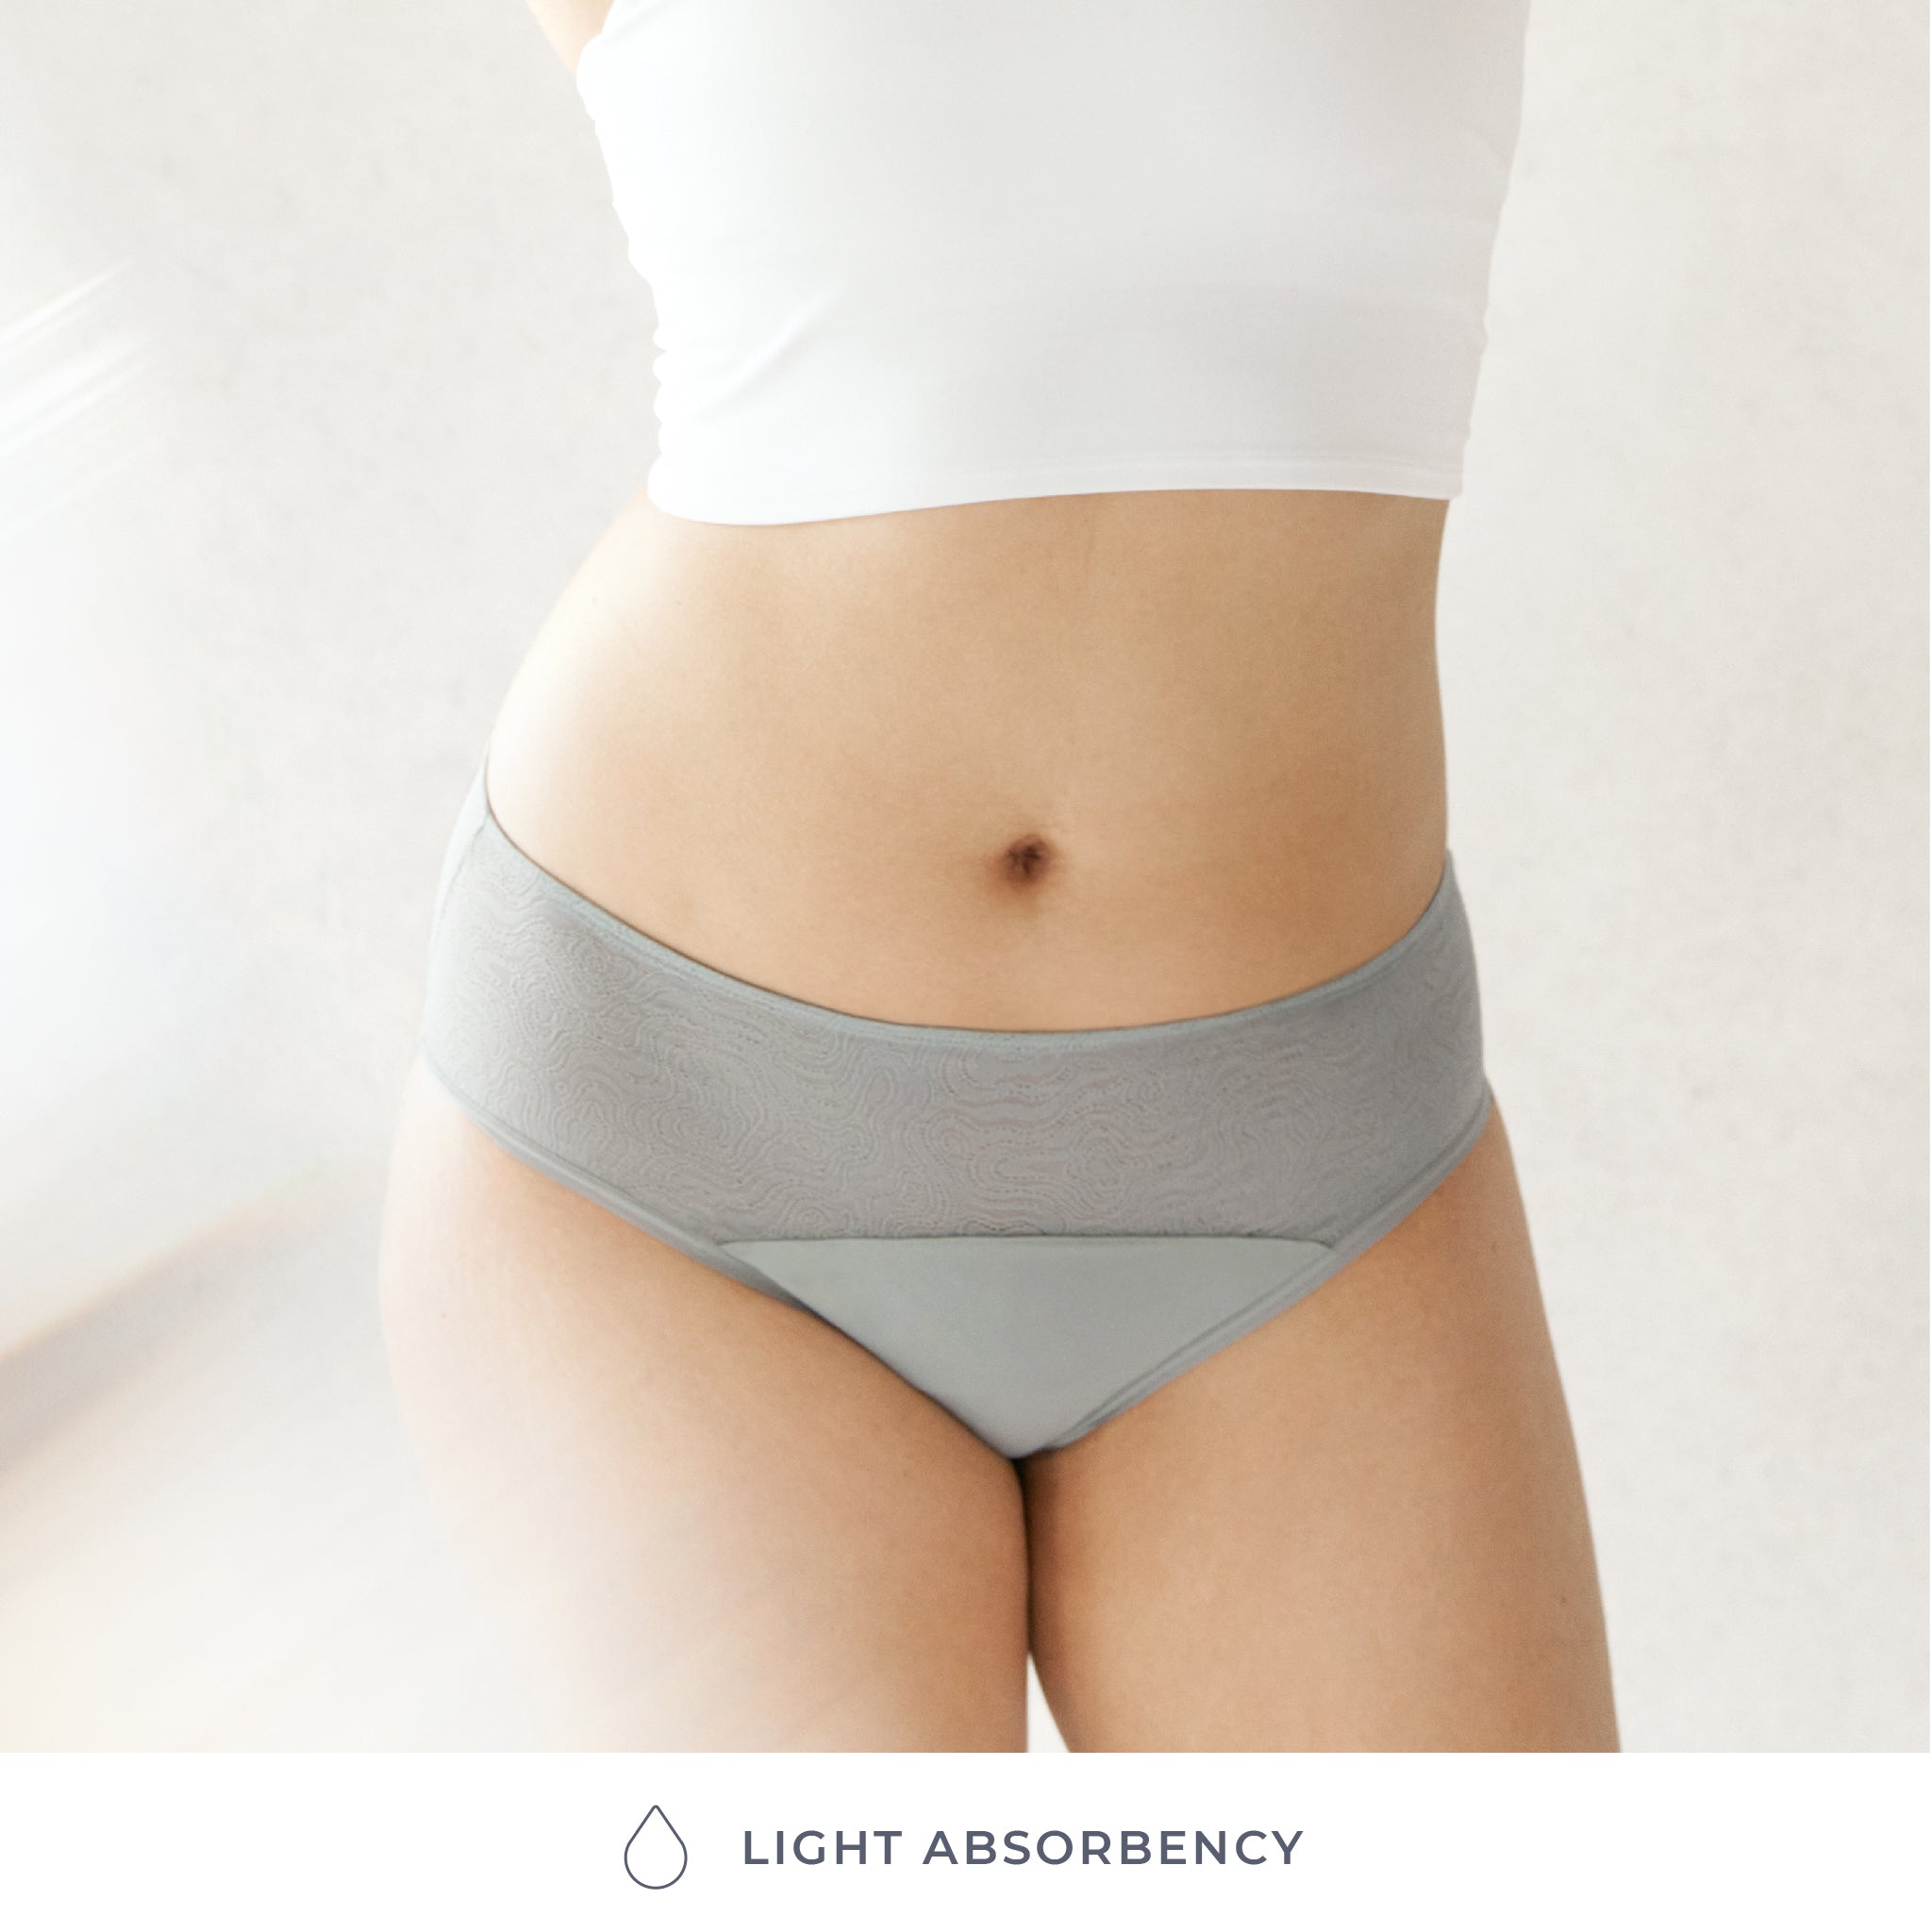 Full Brief Period & Leak-proof Underwear (Absorbency Light